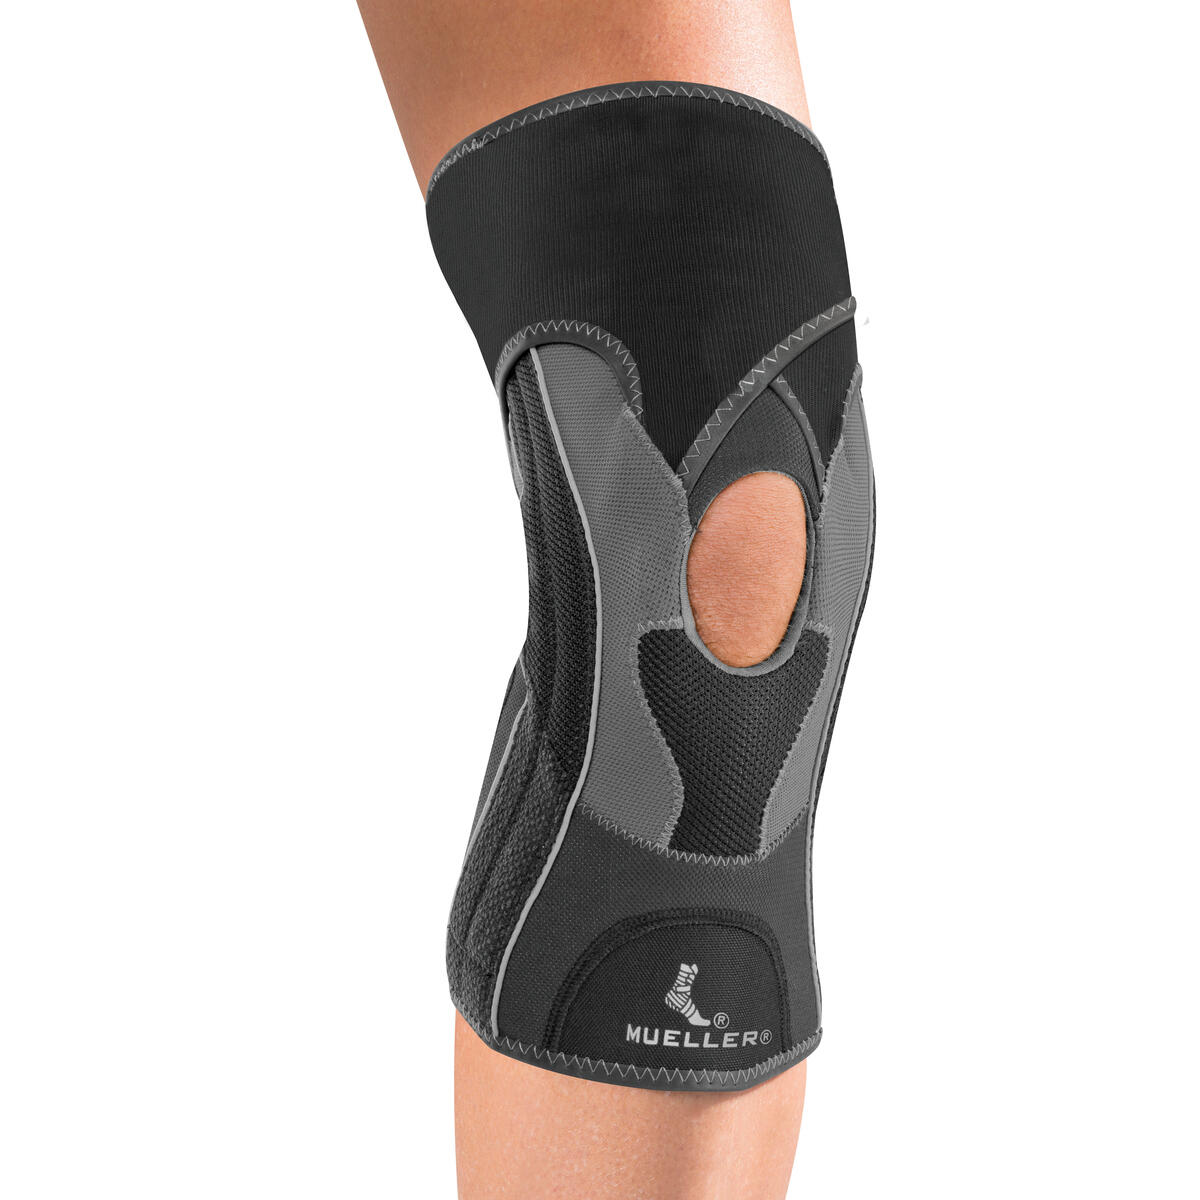 Mueller HG80 Knee Brace Compression Support for Sport (M) 1/2